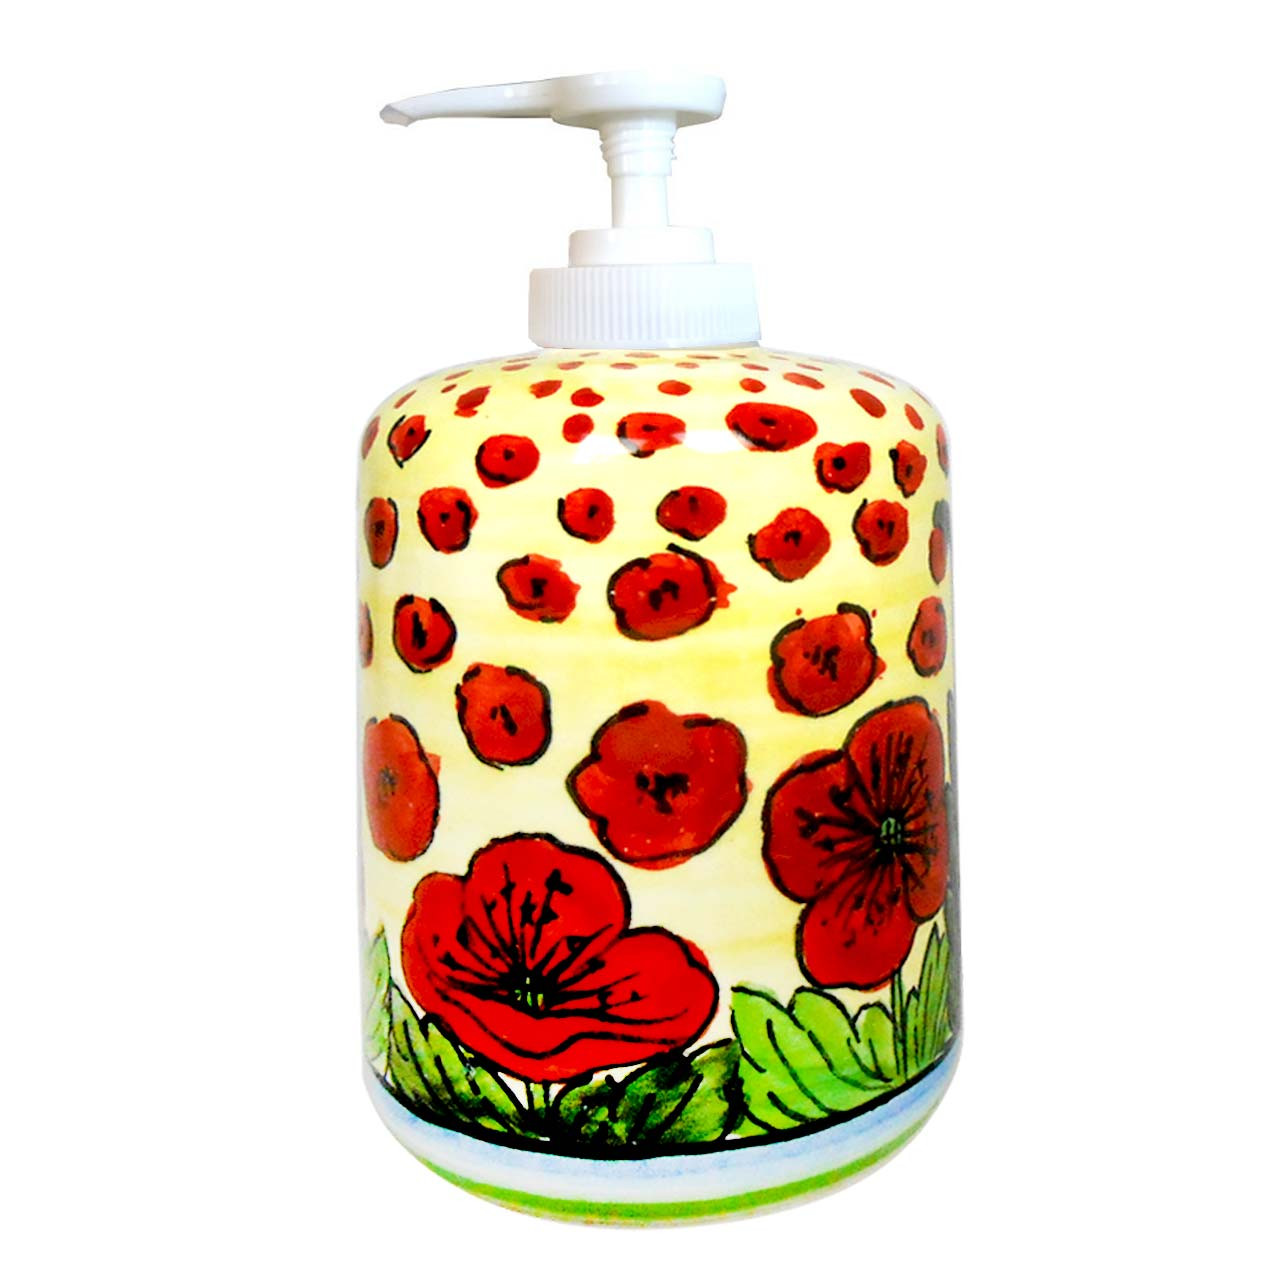 Italian Ceramic Soap Dispensers